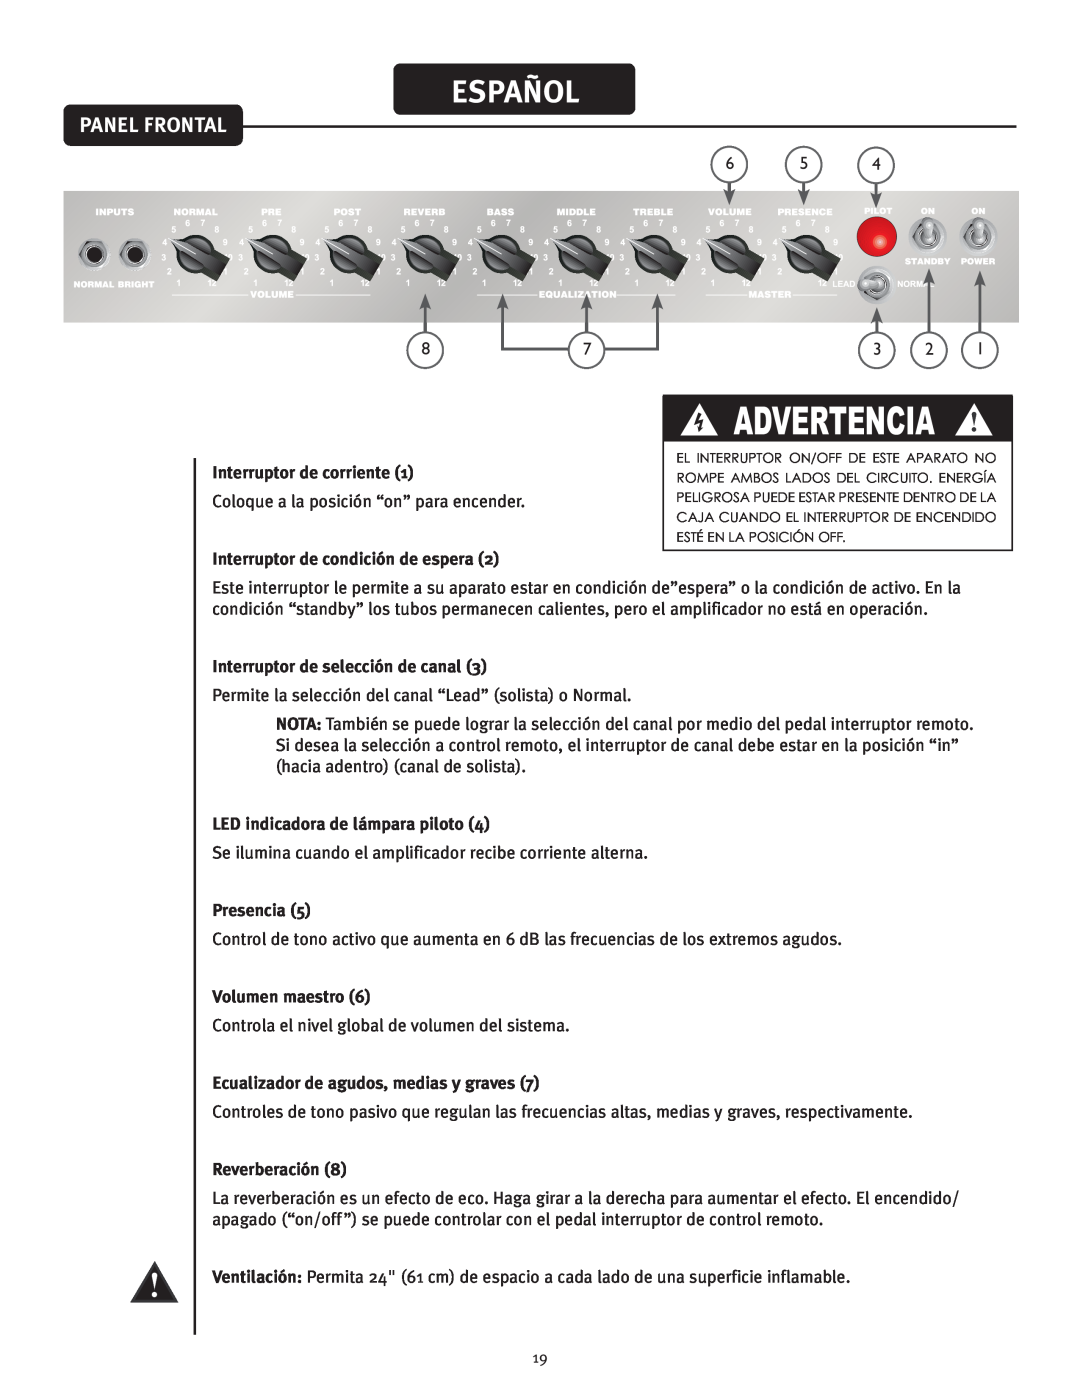 Peavey 50 212 Español, Panel Frontal, Advertencia, Interruptor de corriente, Interruptor de condición de espera, Presencia 